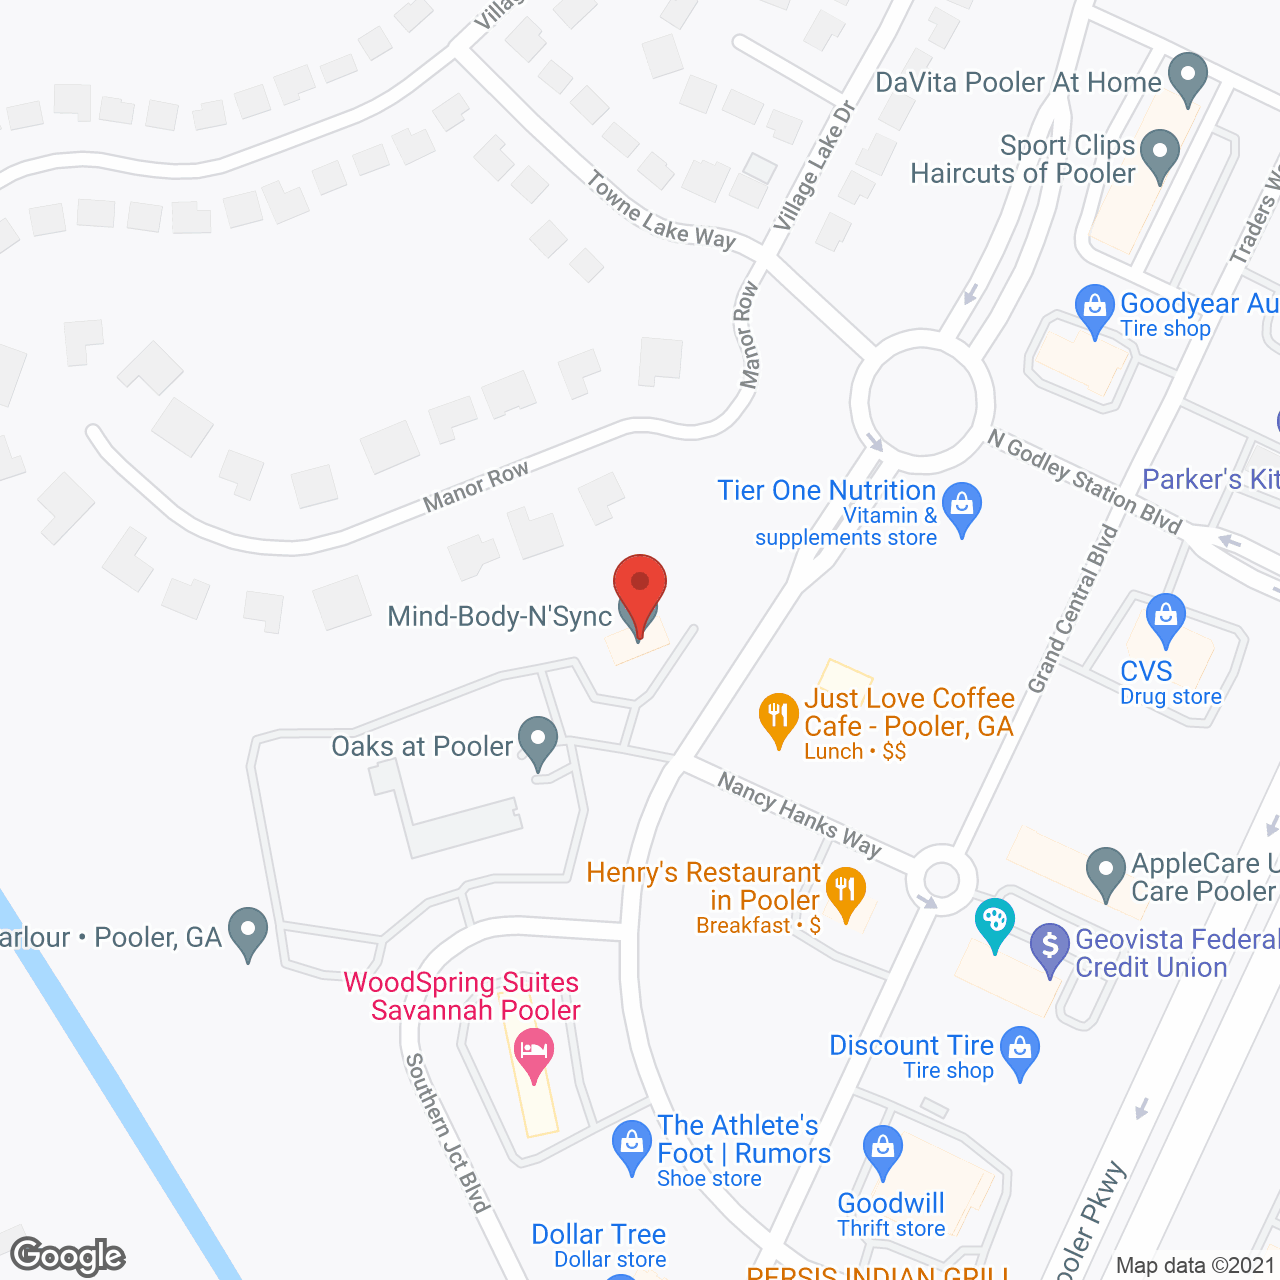 Oaks at Pooler in google map